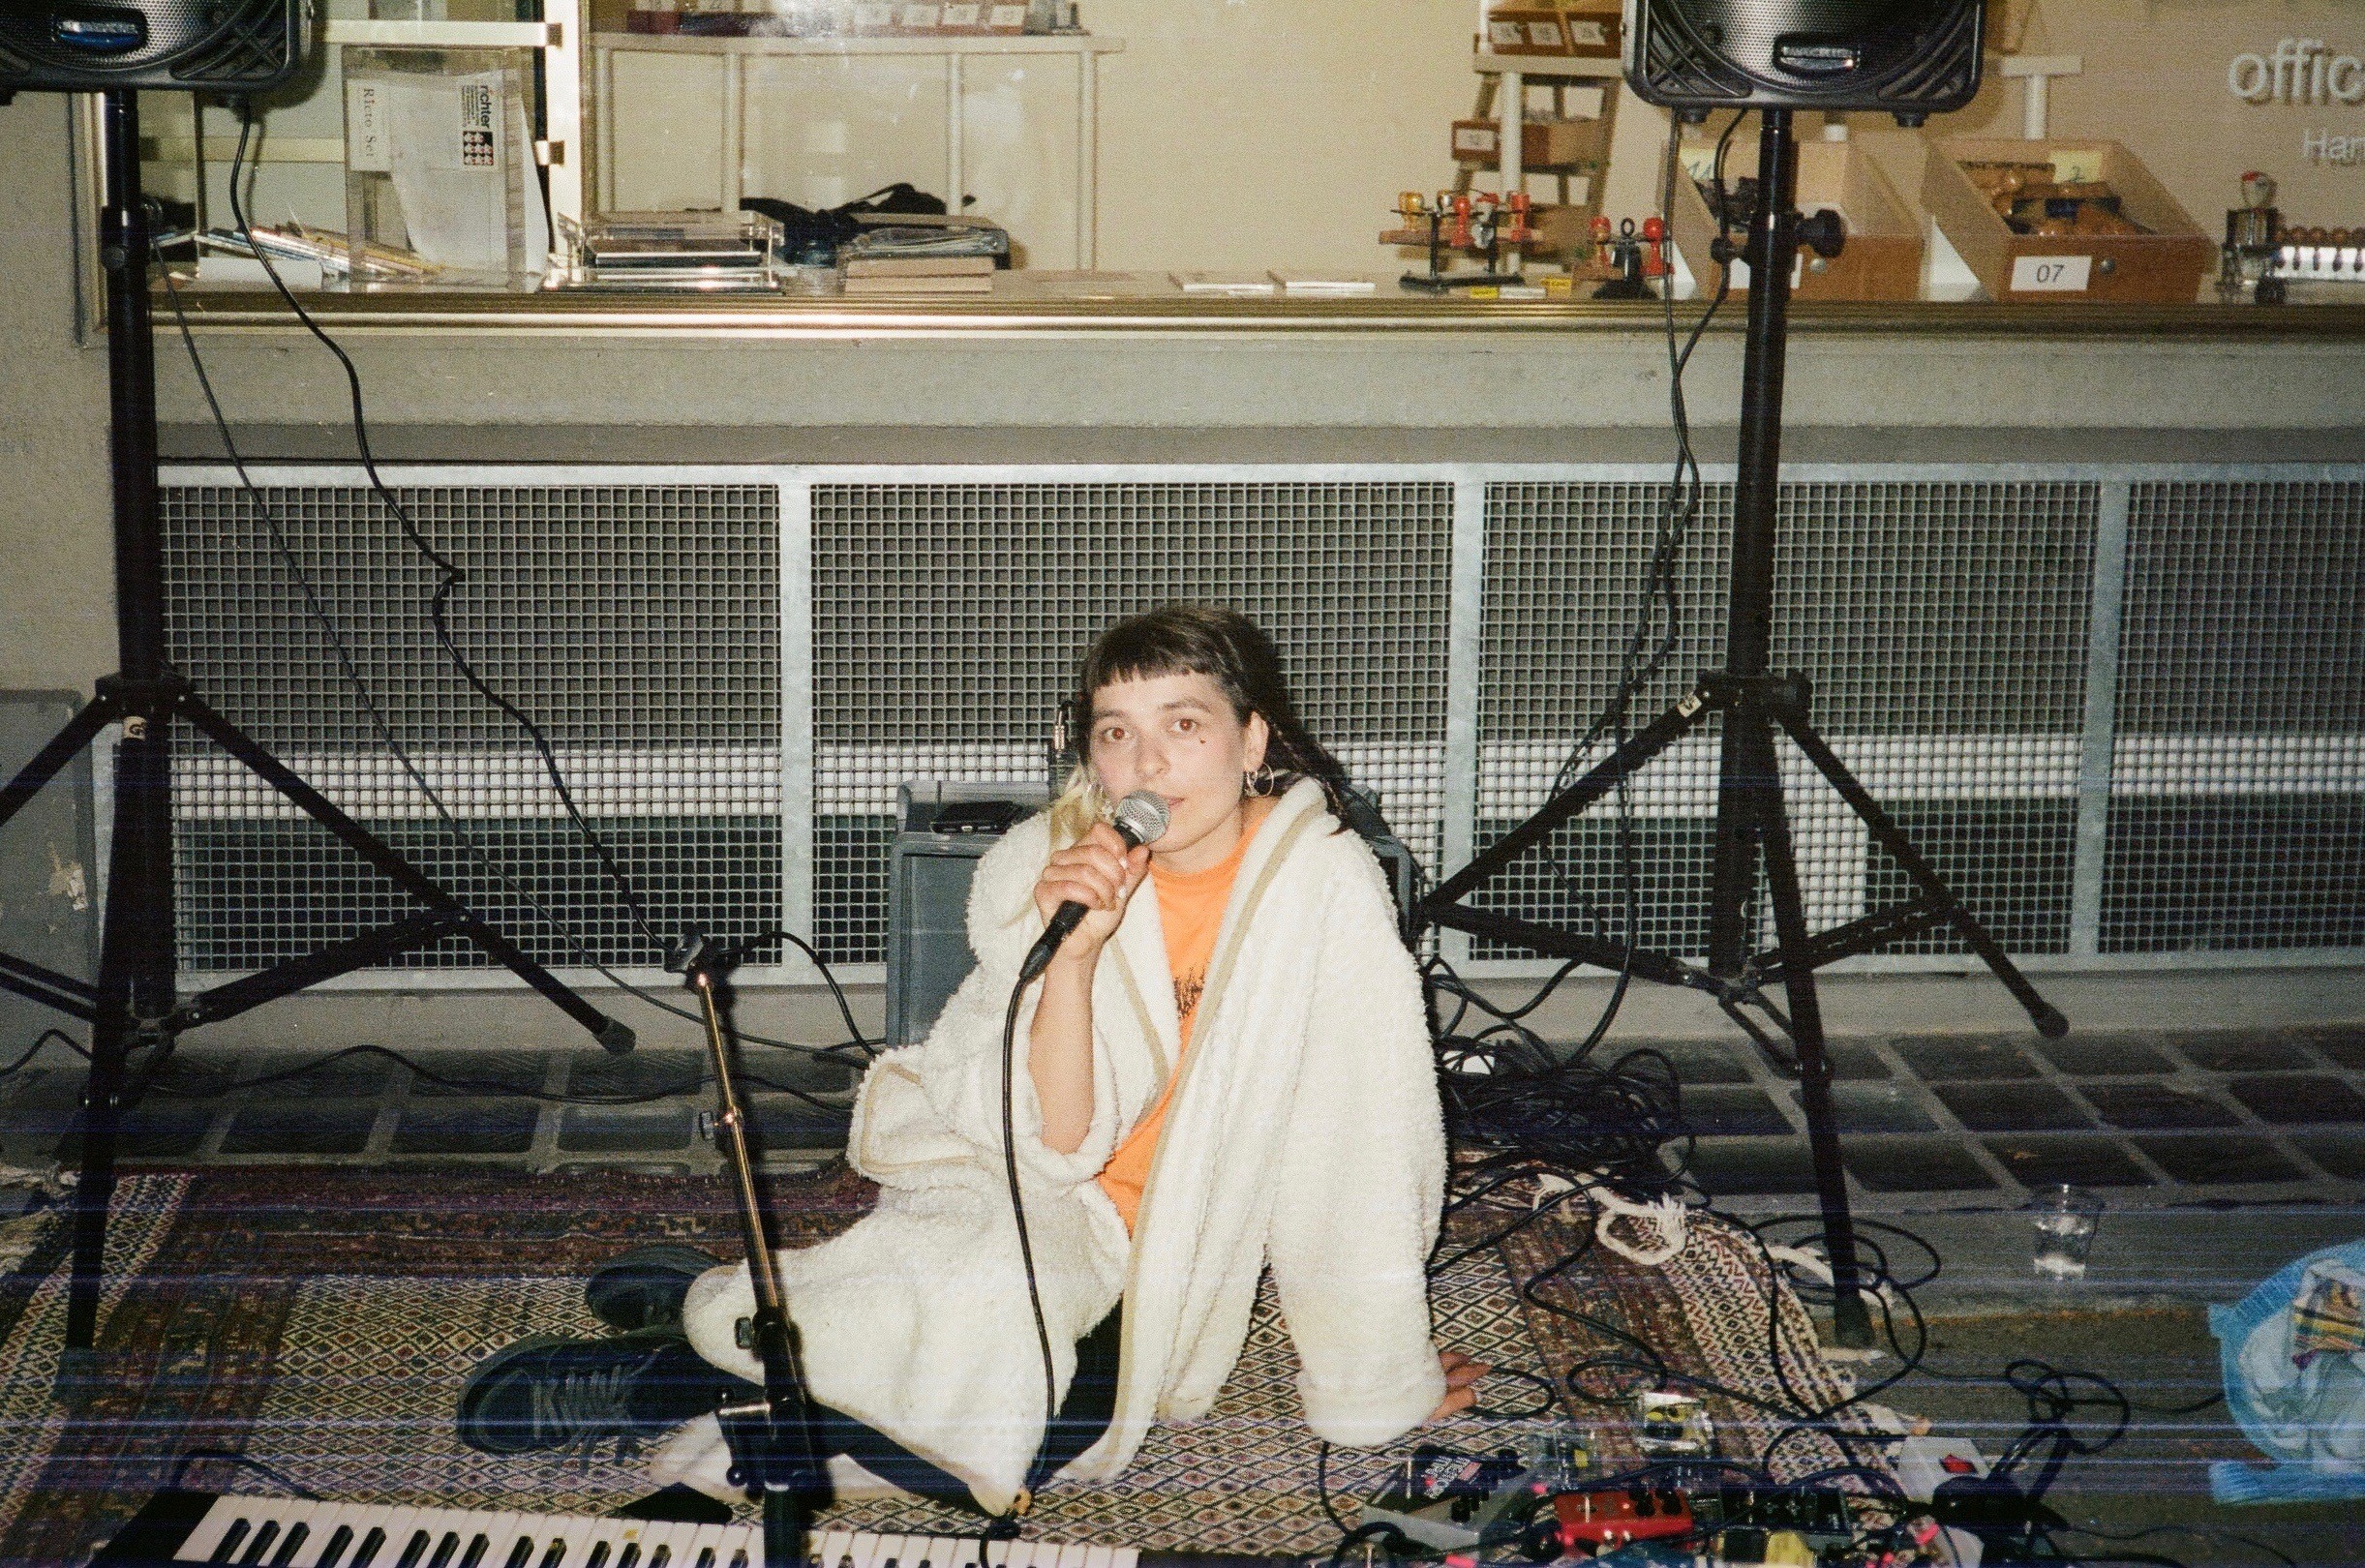 Eine junge Person sitzt in einem weissen Wollmantel am Boden und spricht in ein Mikrofon. Im Raum hat es einen Teppich, Lautsprecher, ein Keyboard und viele Kabel.